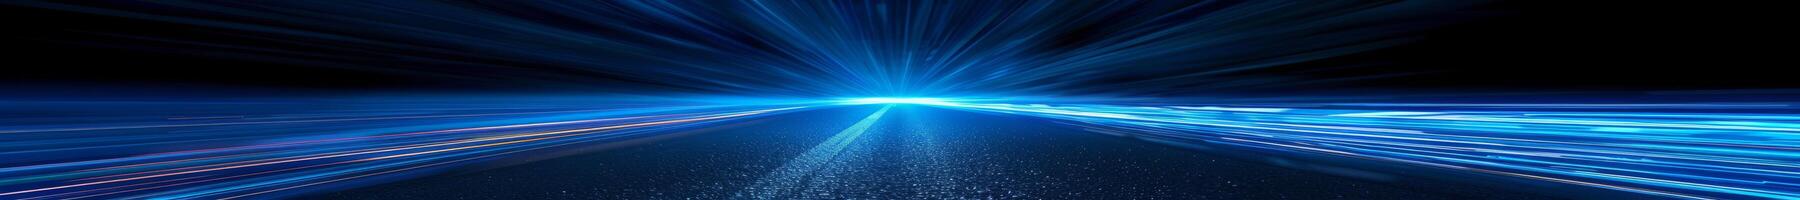 virtueel realiteit speedway verlichte door levendig licht trails foto